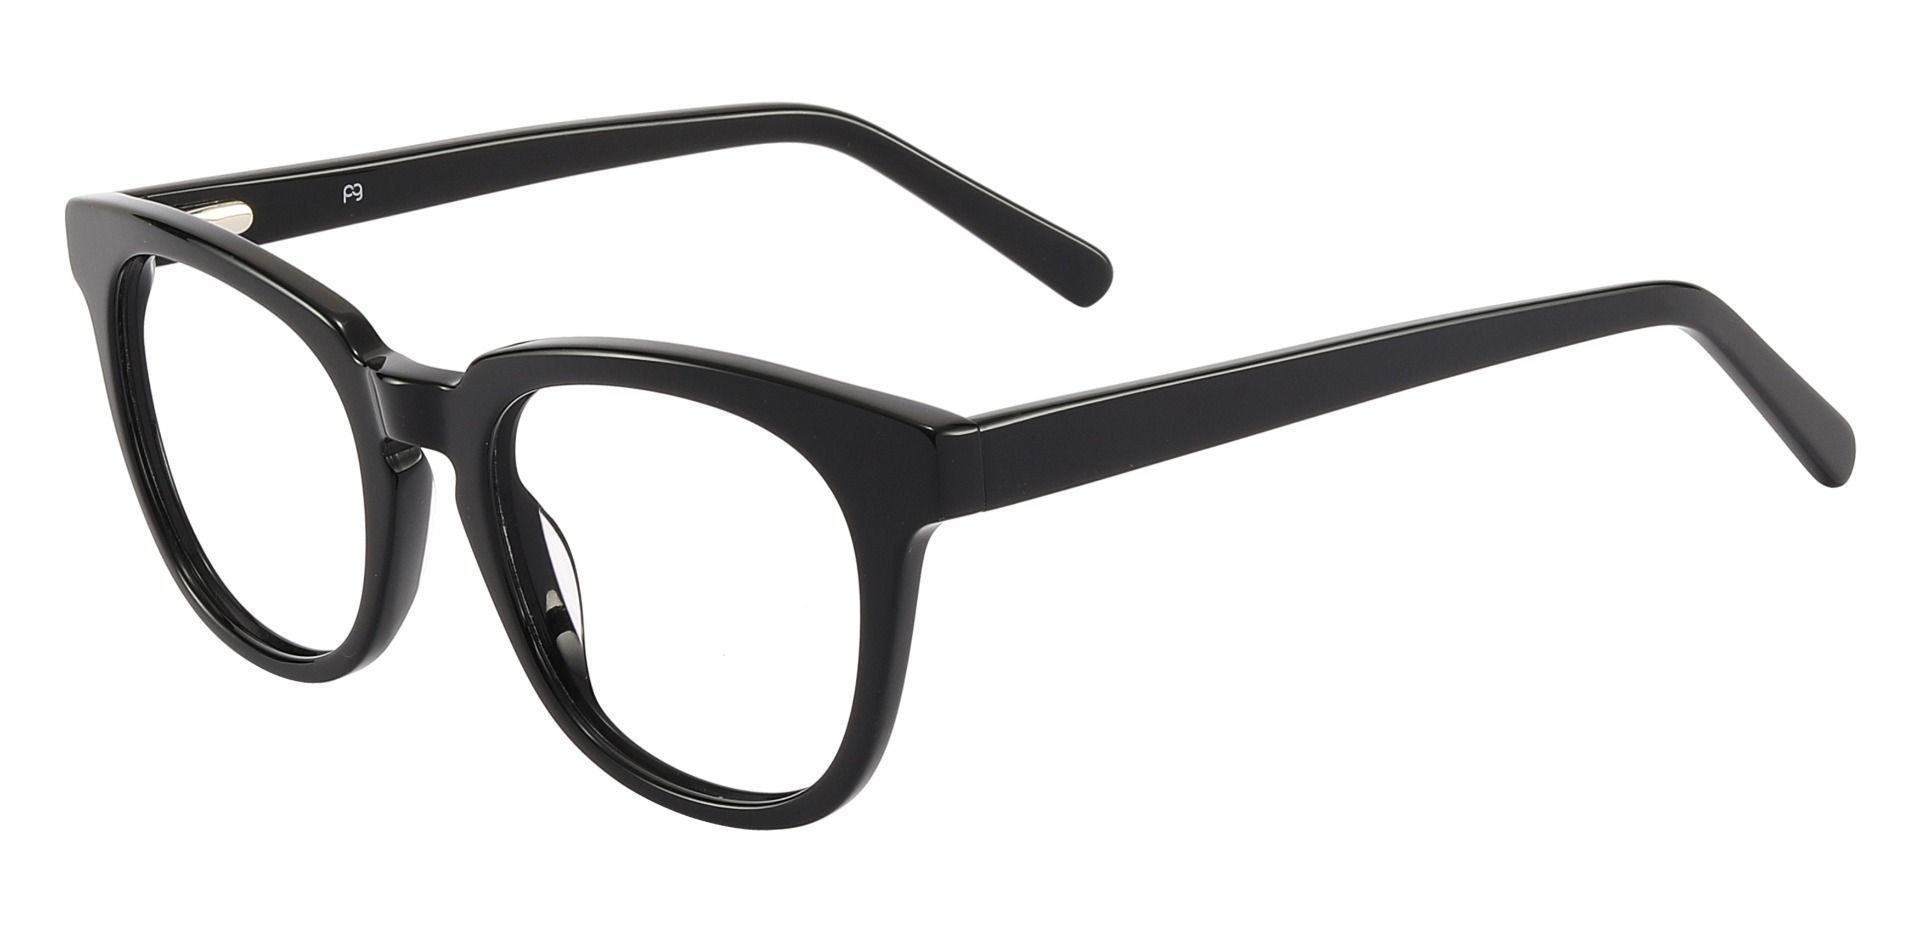 Portage Oval Prescription Glasses - Black